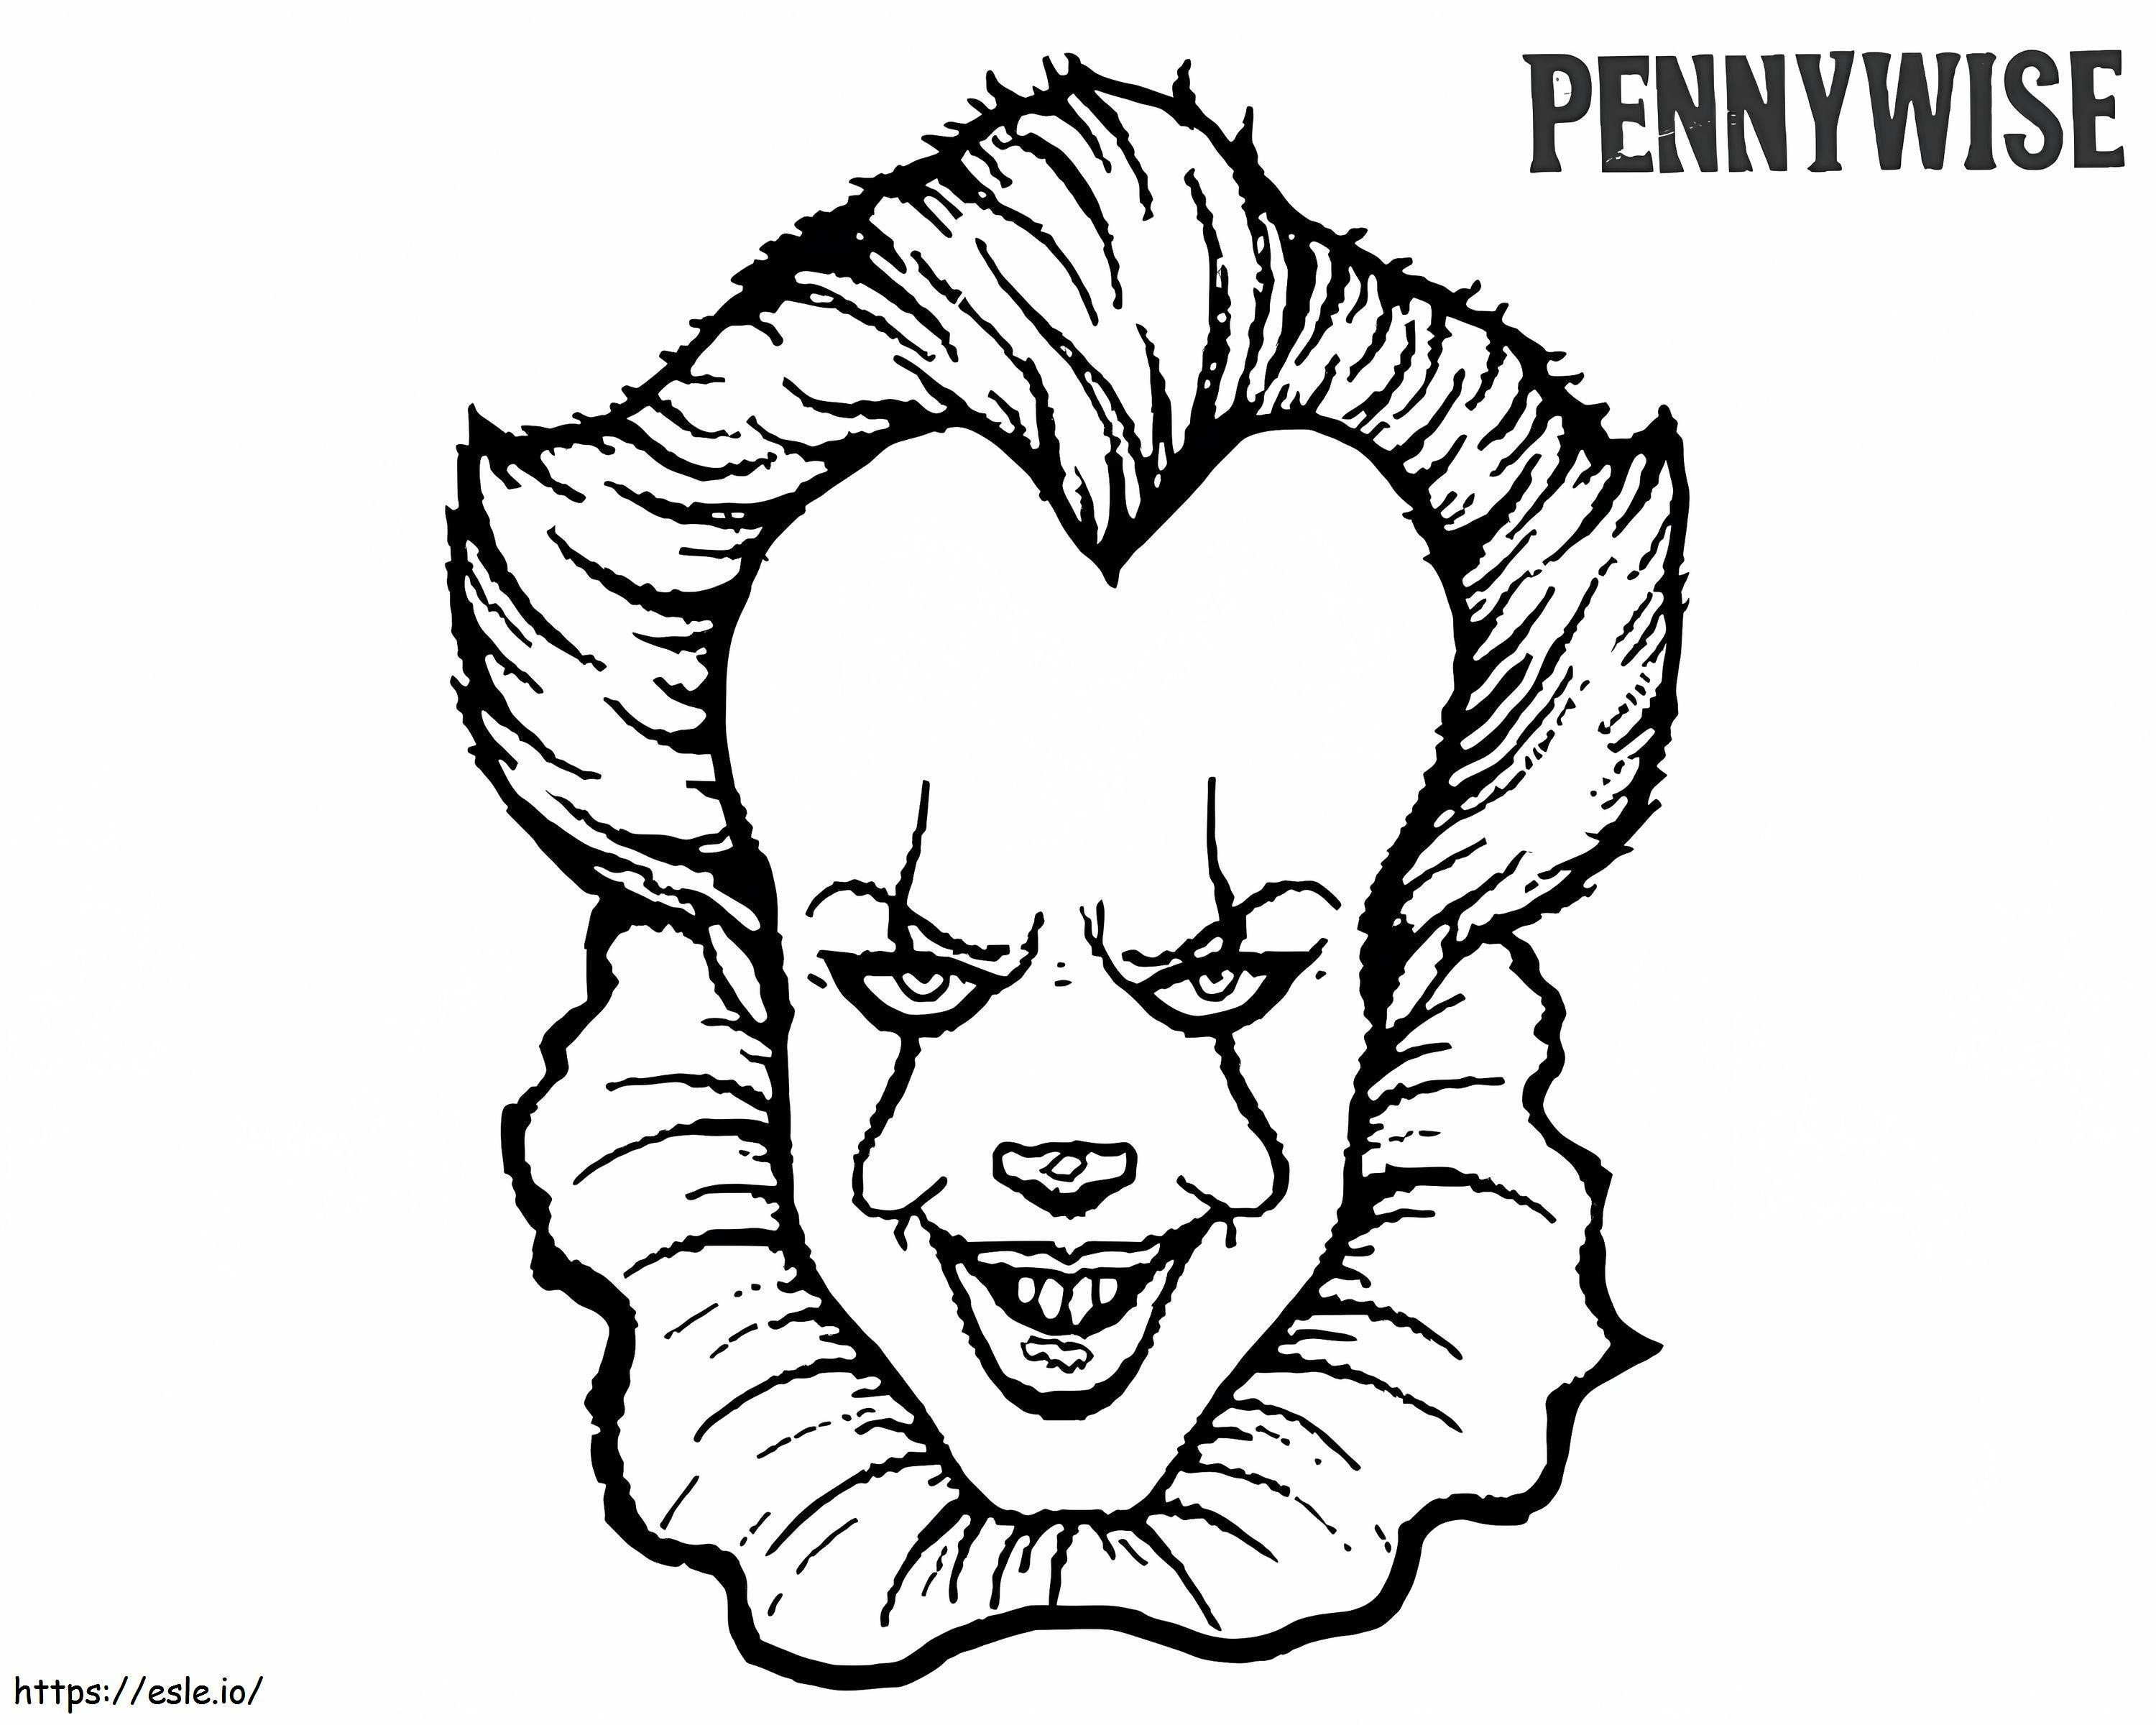 Pennywise'ın Yüzü boyama